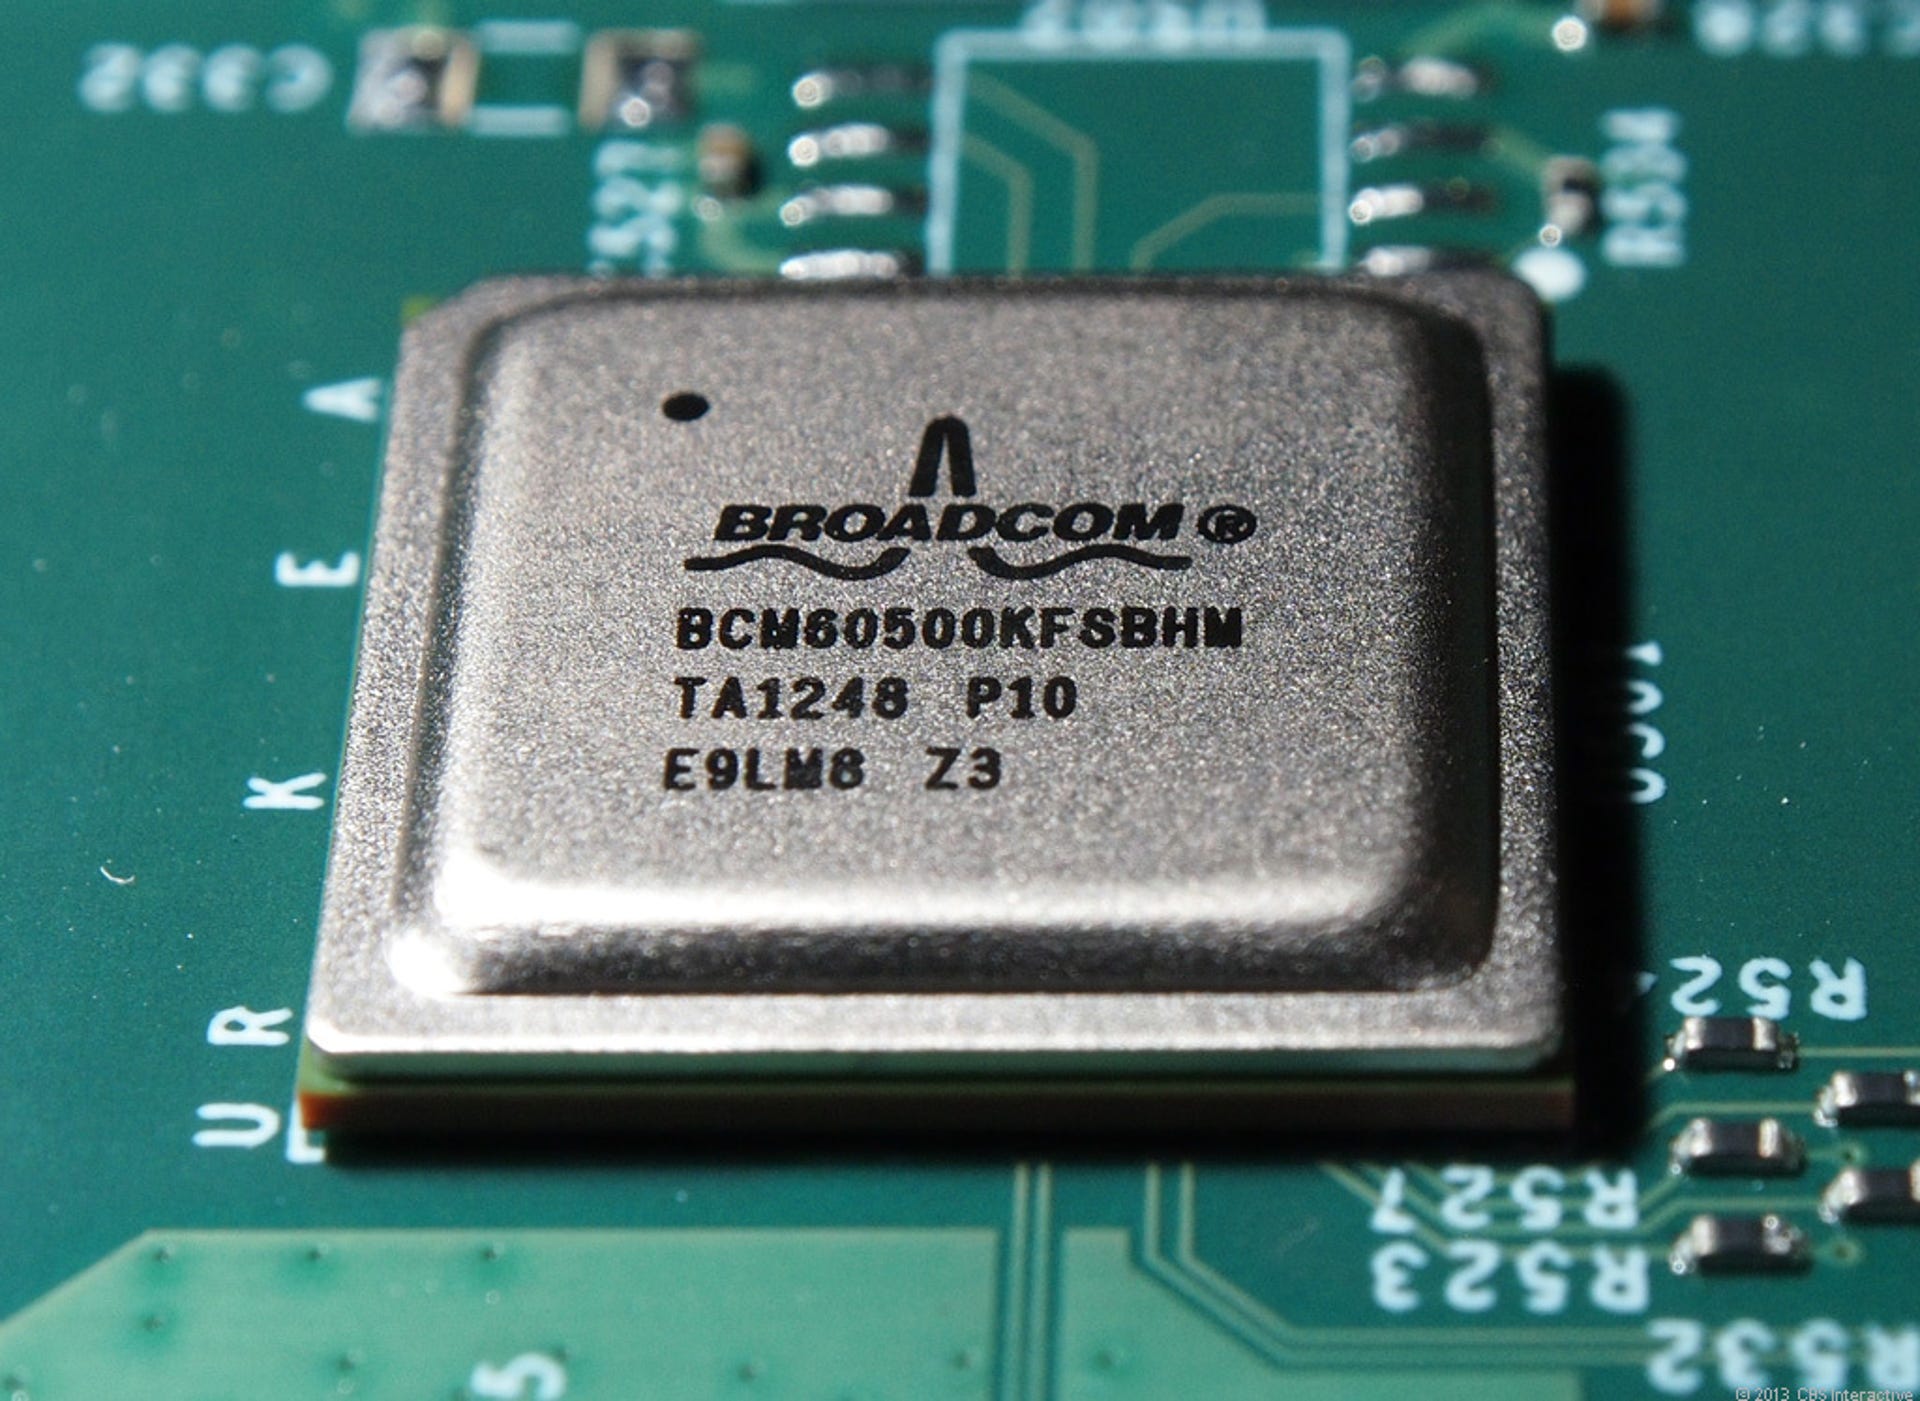 The new BCM60500 HomePlug AV2 SoCs from Broadcom.